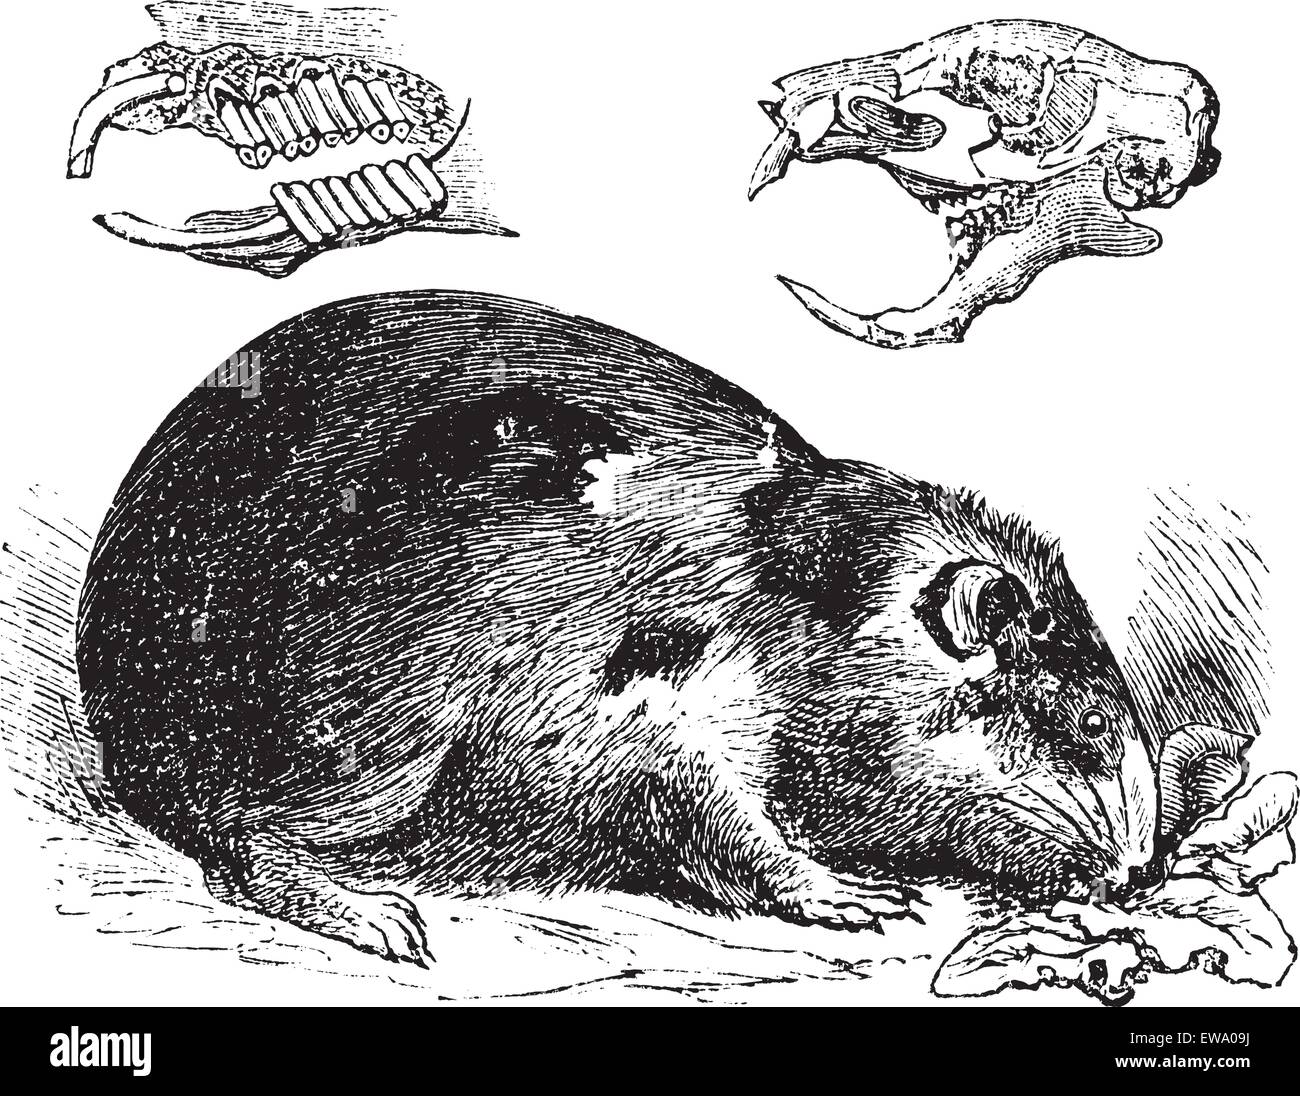 Ou cobaye Cavia ou Cavia porcellus, gravure d'époque. Vieille illustration gravée d'un cochon d'montrant les os et les dents de la mâchoire Illustration de Vecteur